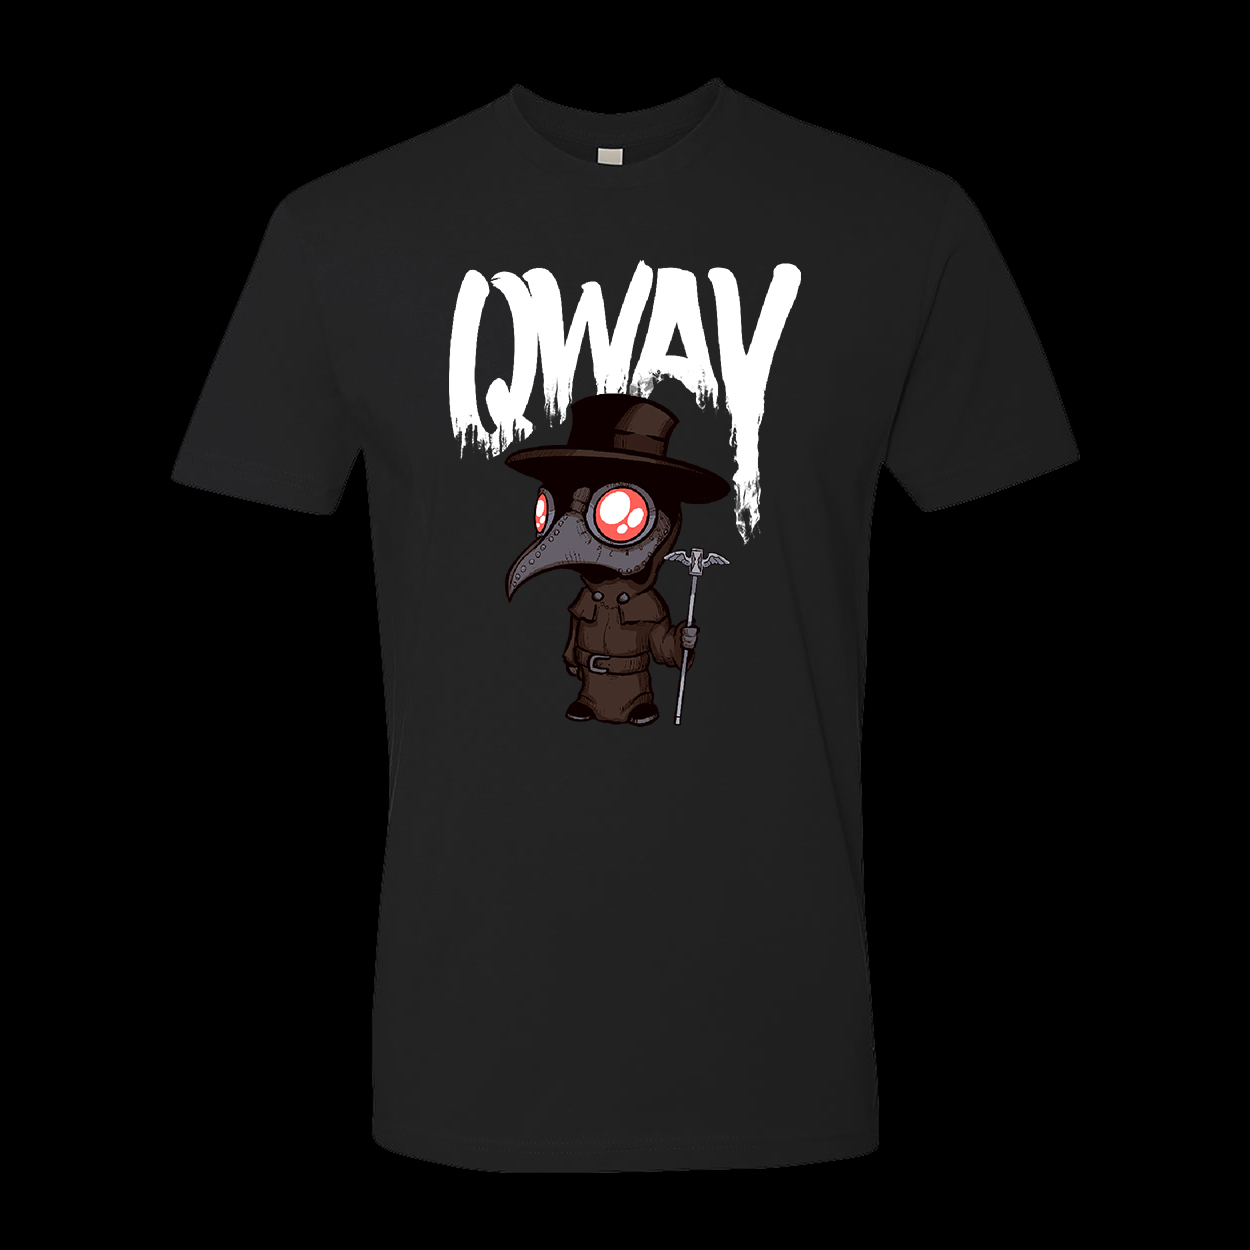 Qway Plague Doctor t-shirt Black color